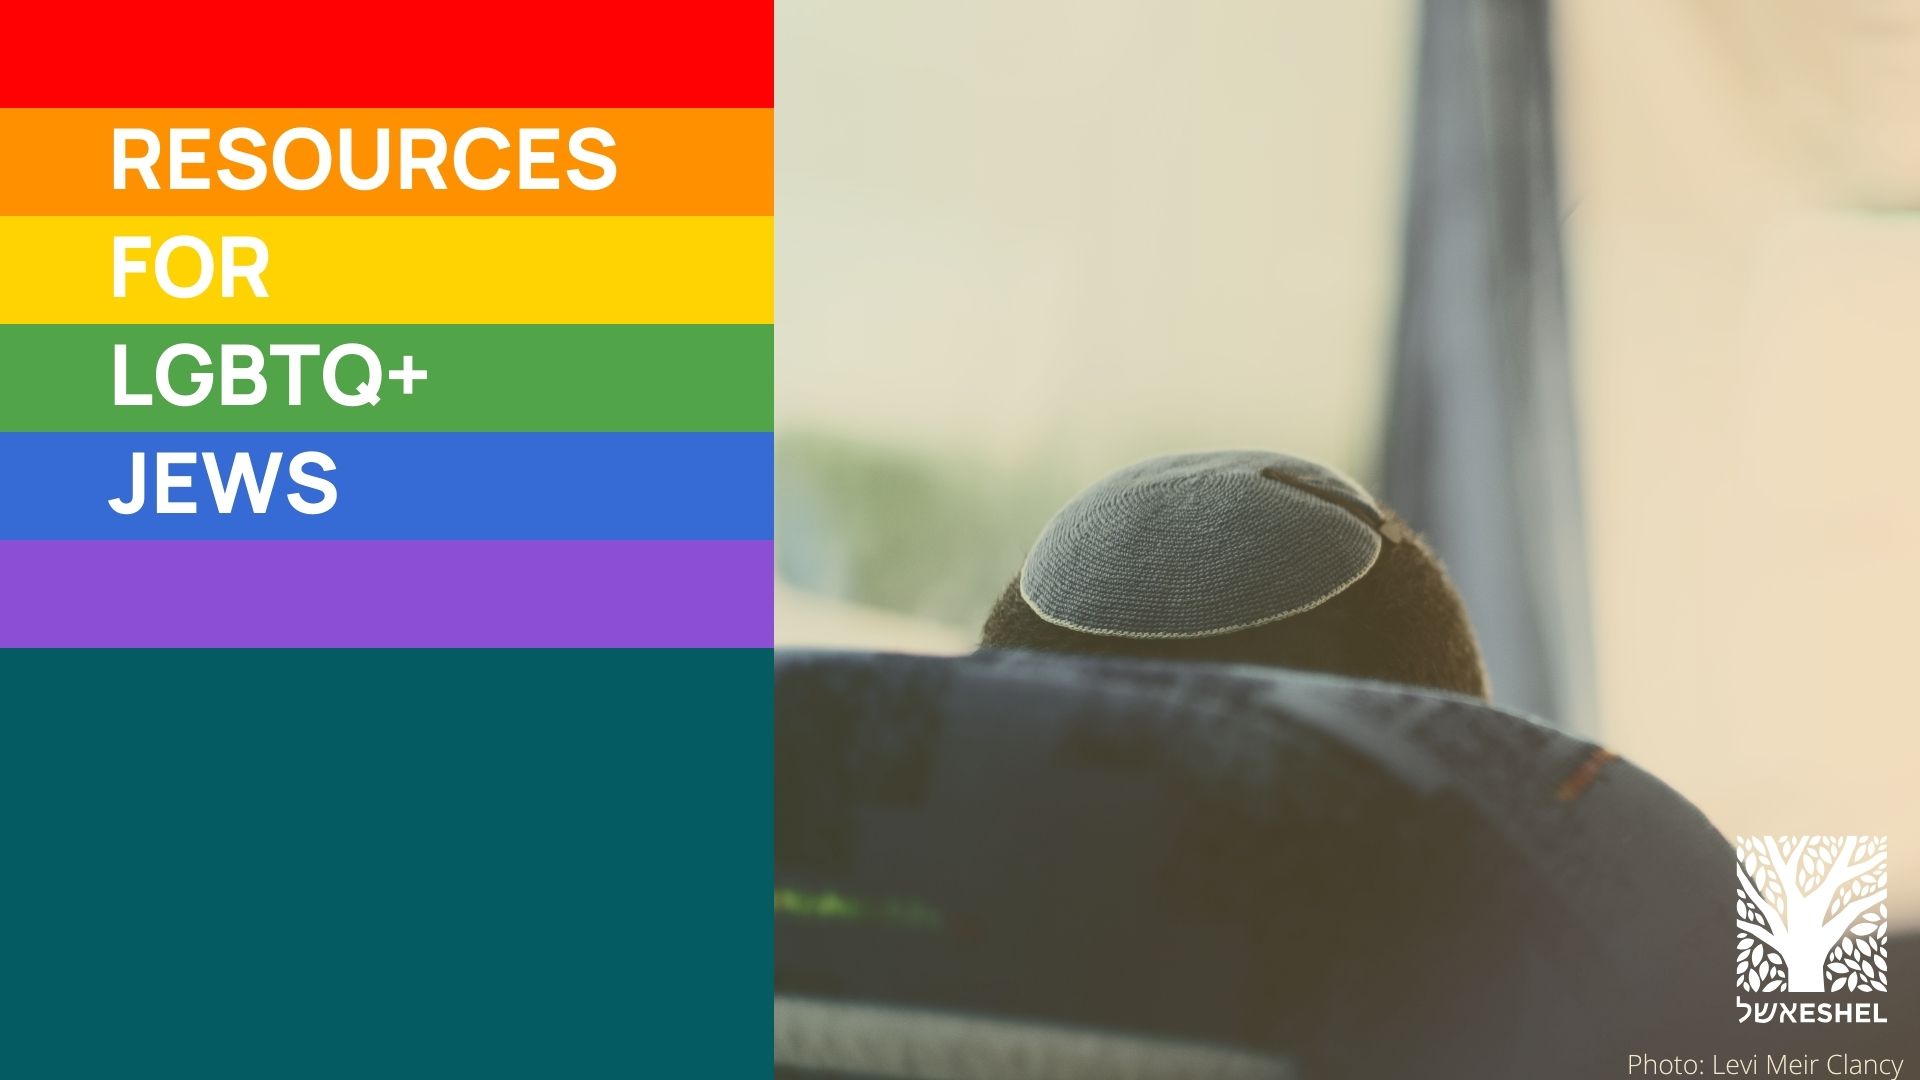 Resources for LGBTQ+ Jews